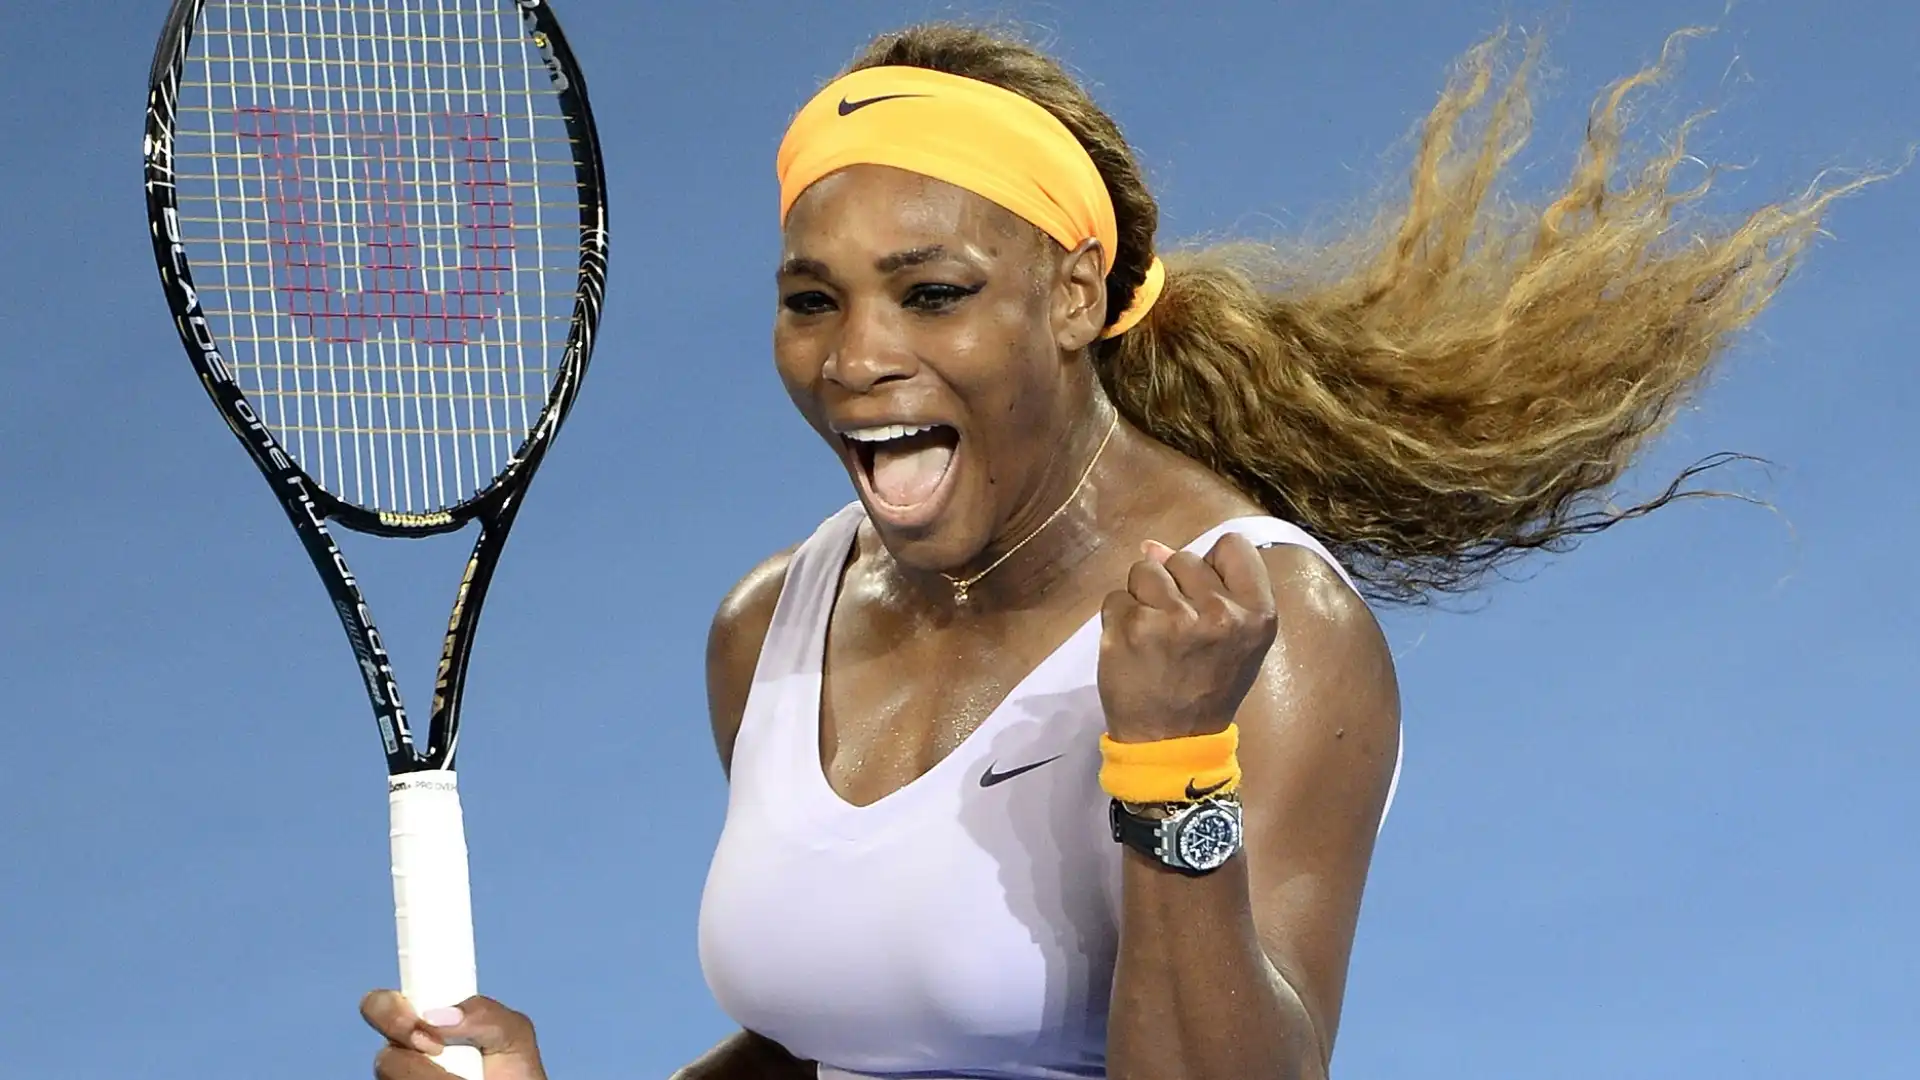 Serena Williams (Tennis, Stati Uniti): patrimonio netto stimato 250 milioni di dollari. Considerata una delle più grandi di sempre, ha vinto 23 tornei del Grande Slam